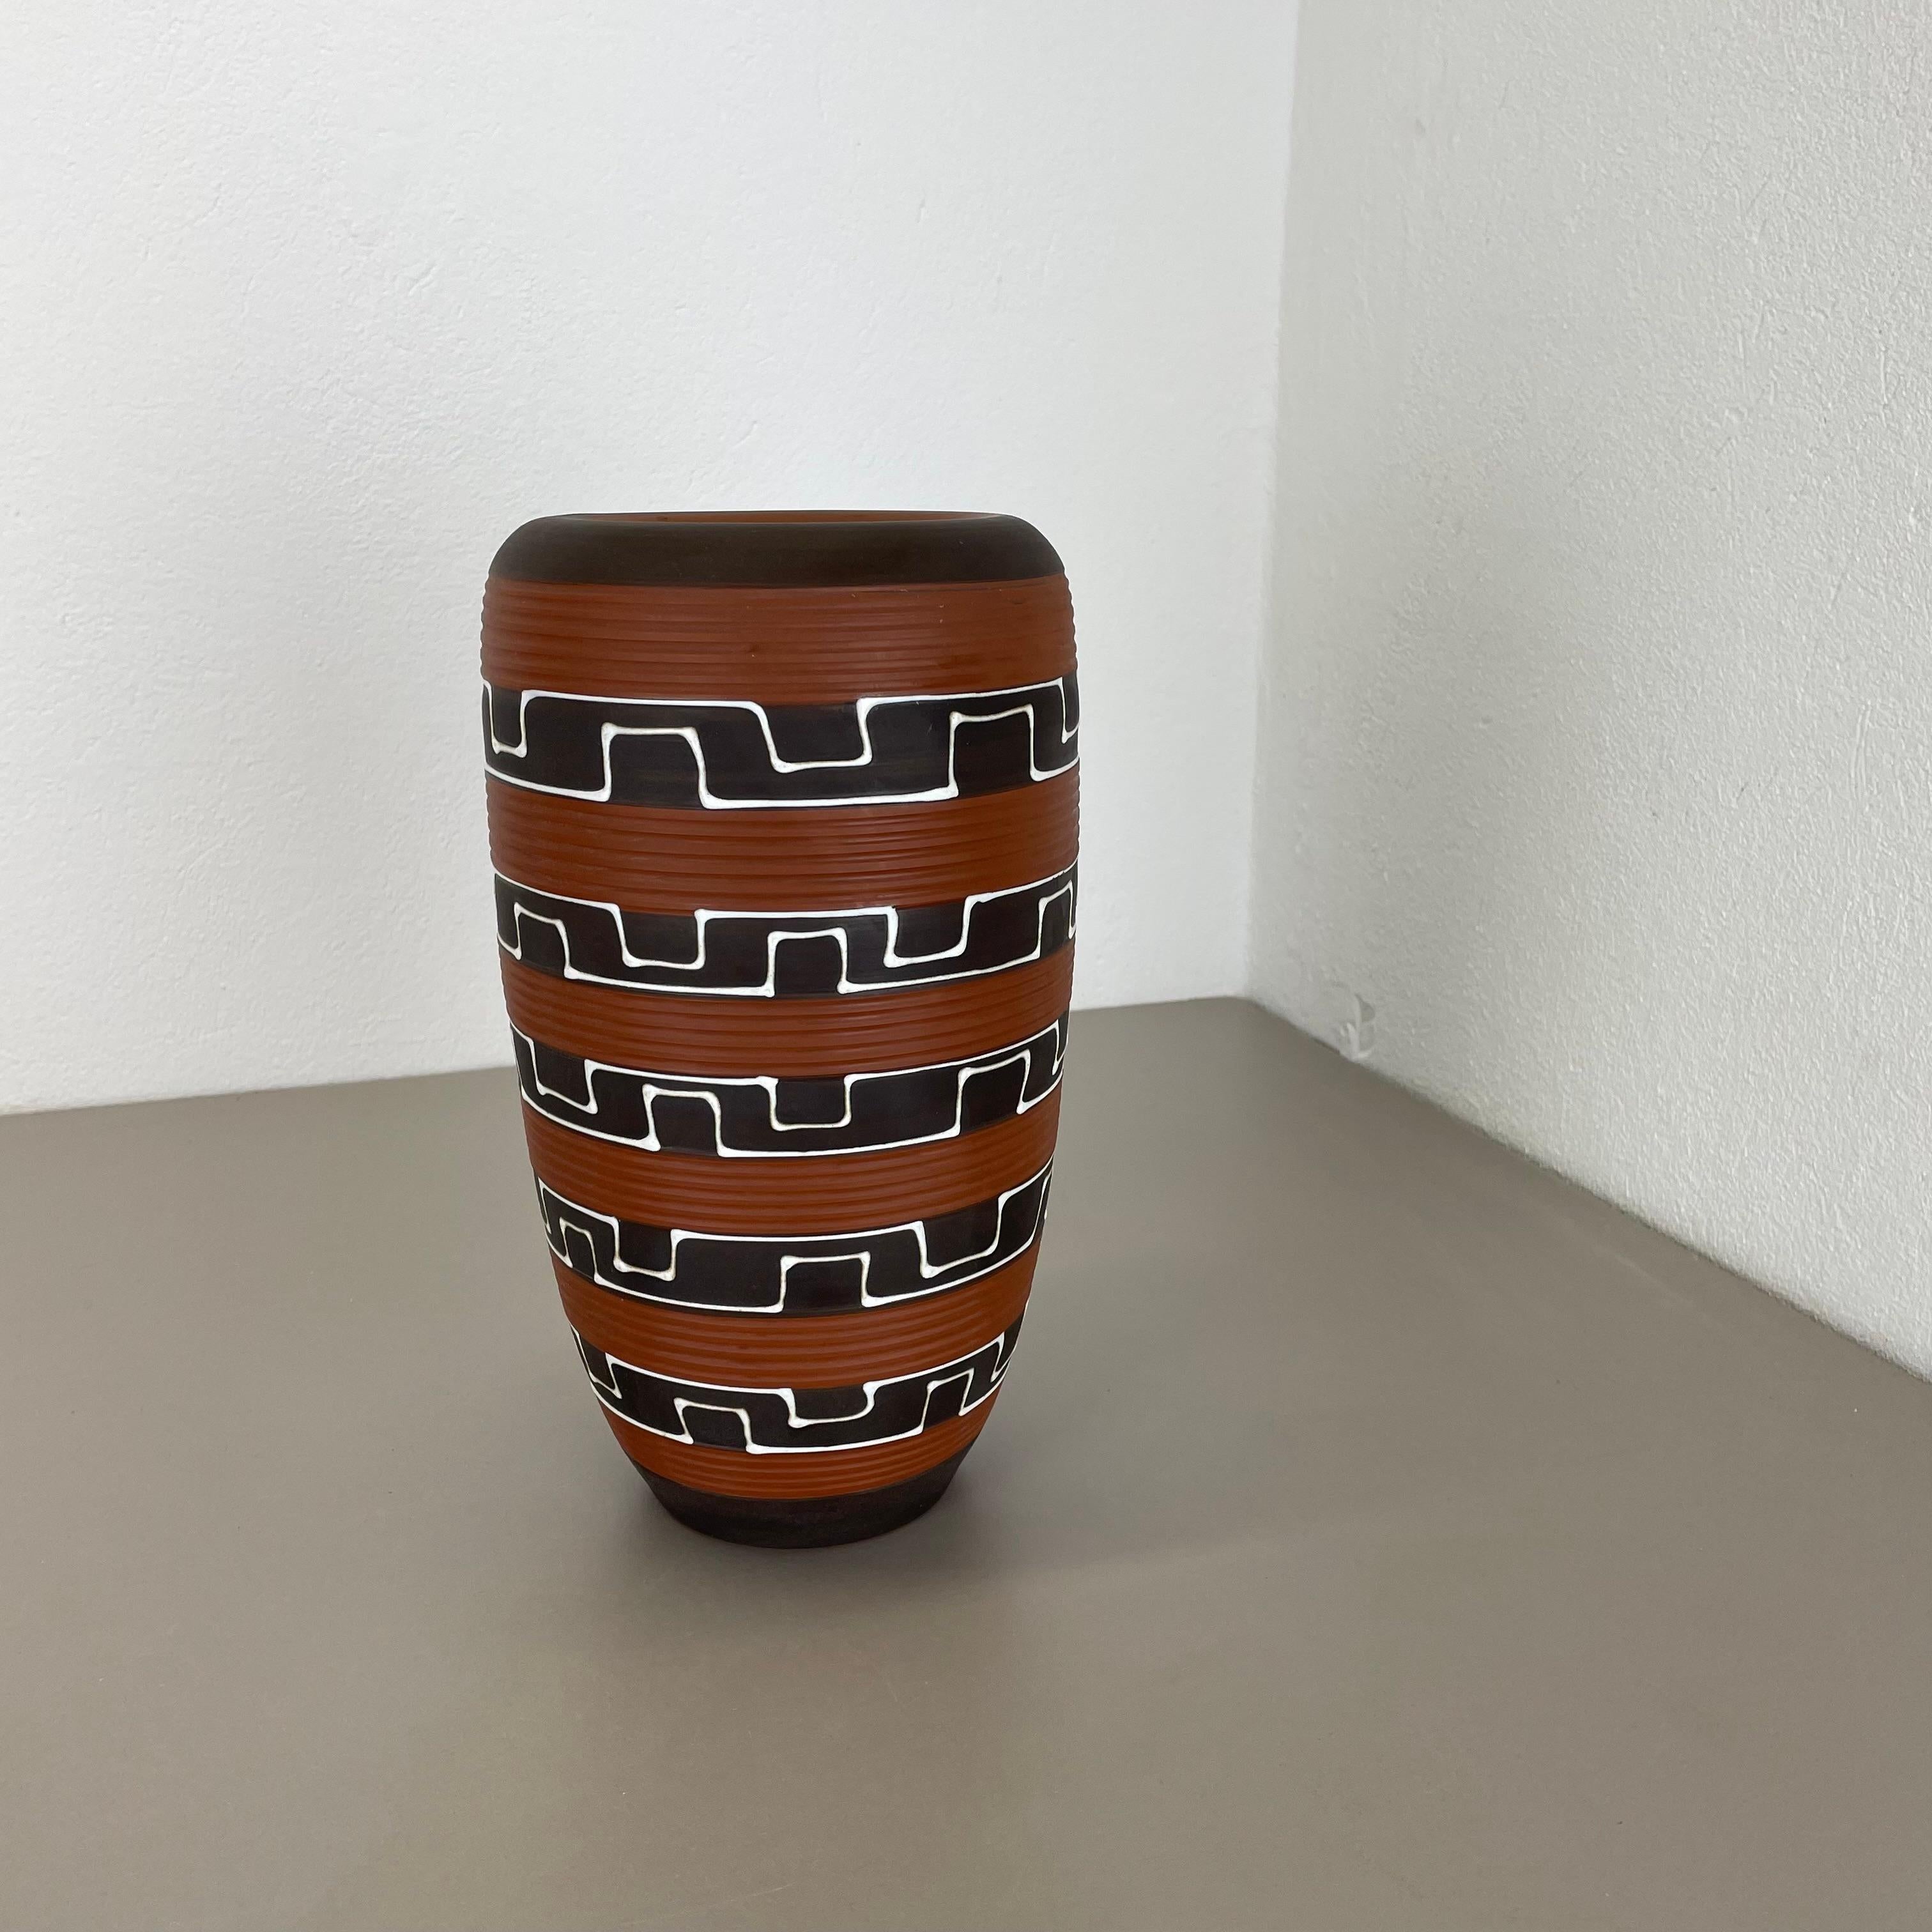 Artikel:

Vase aus Keramik 


Produzent:

ILKRA Ceramics, Deutschland


Jahrzehnt:

1950s





Original Vintage Keramikvase aus den 1950er Jahren, hergestellt in Deutschland. Hochwertige deutsche Produktion mit einer schönen abstrakten